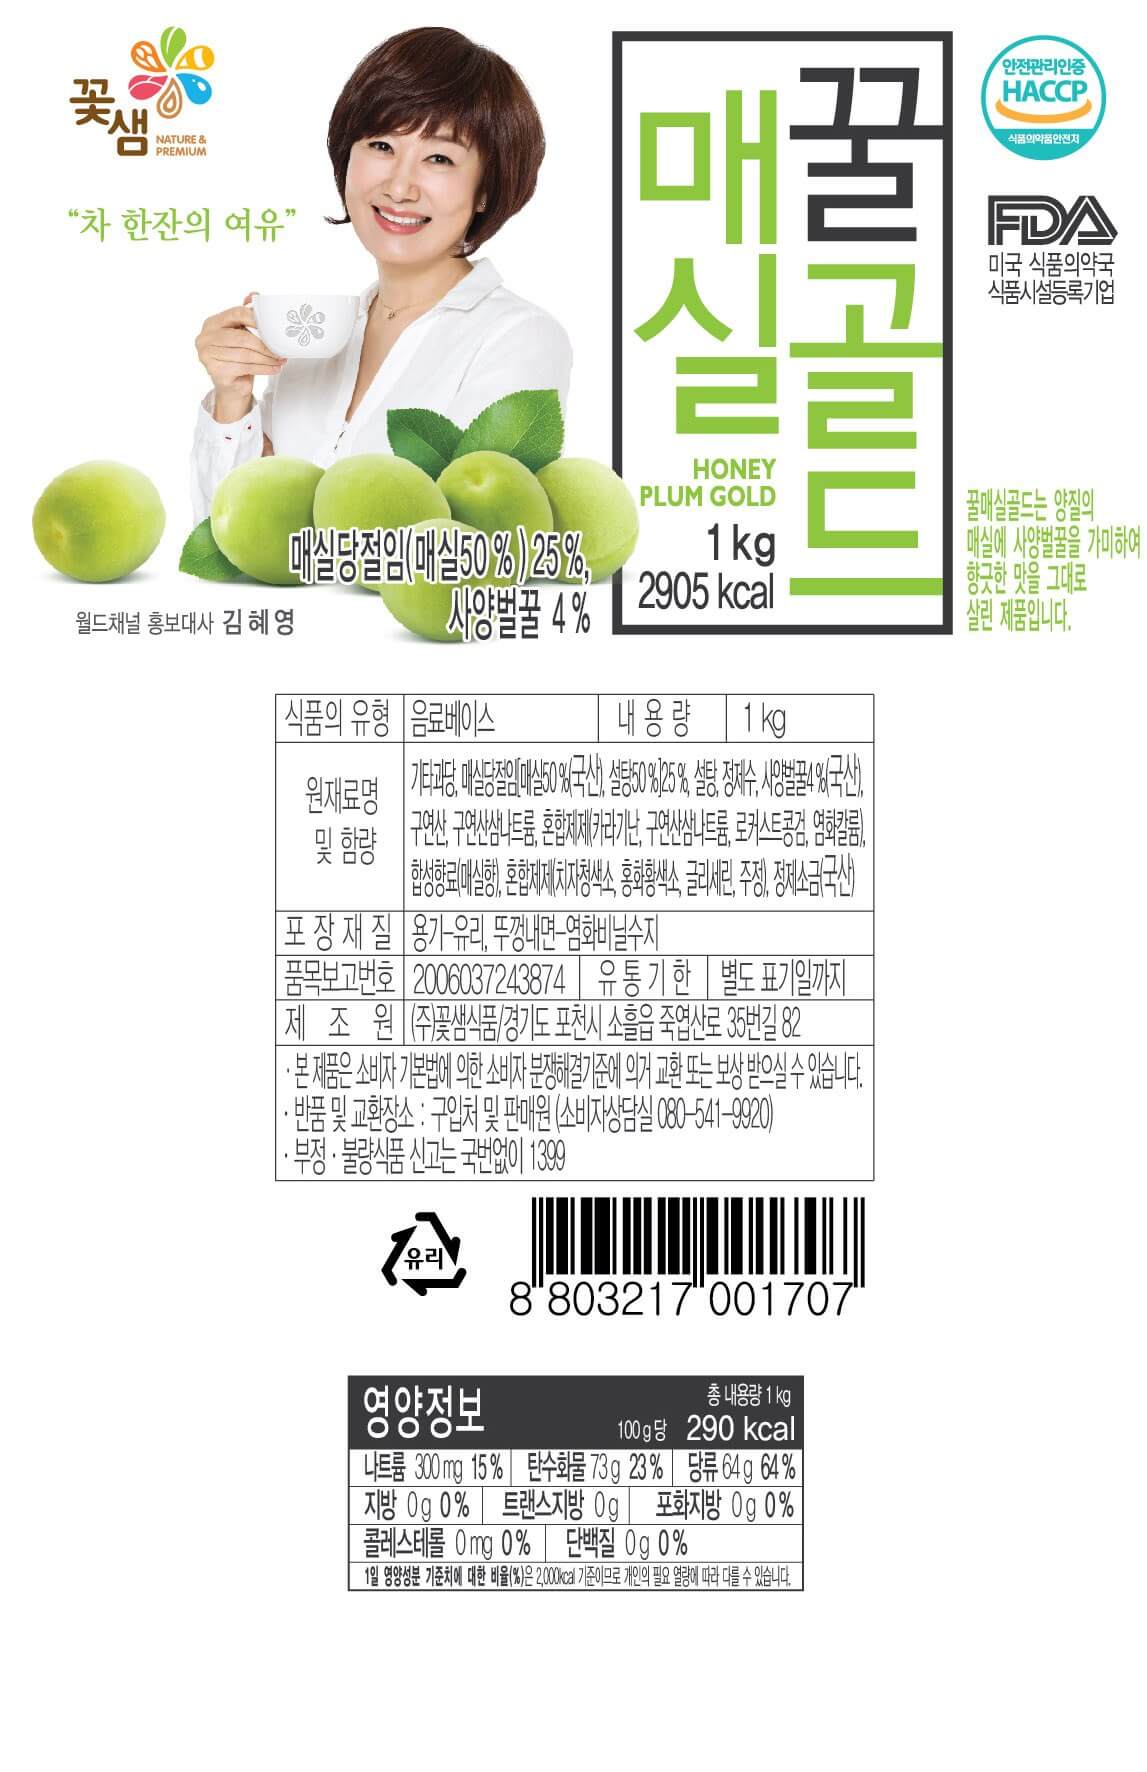 韓國食品-[Kkohshaem] Honey Plum Tea 1kg